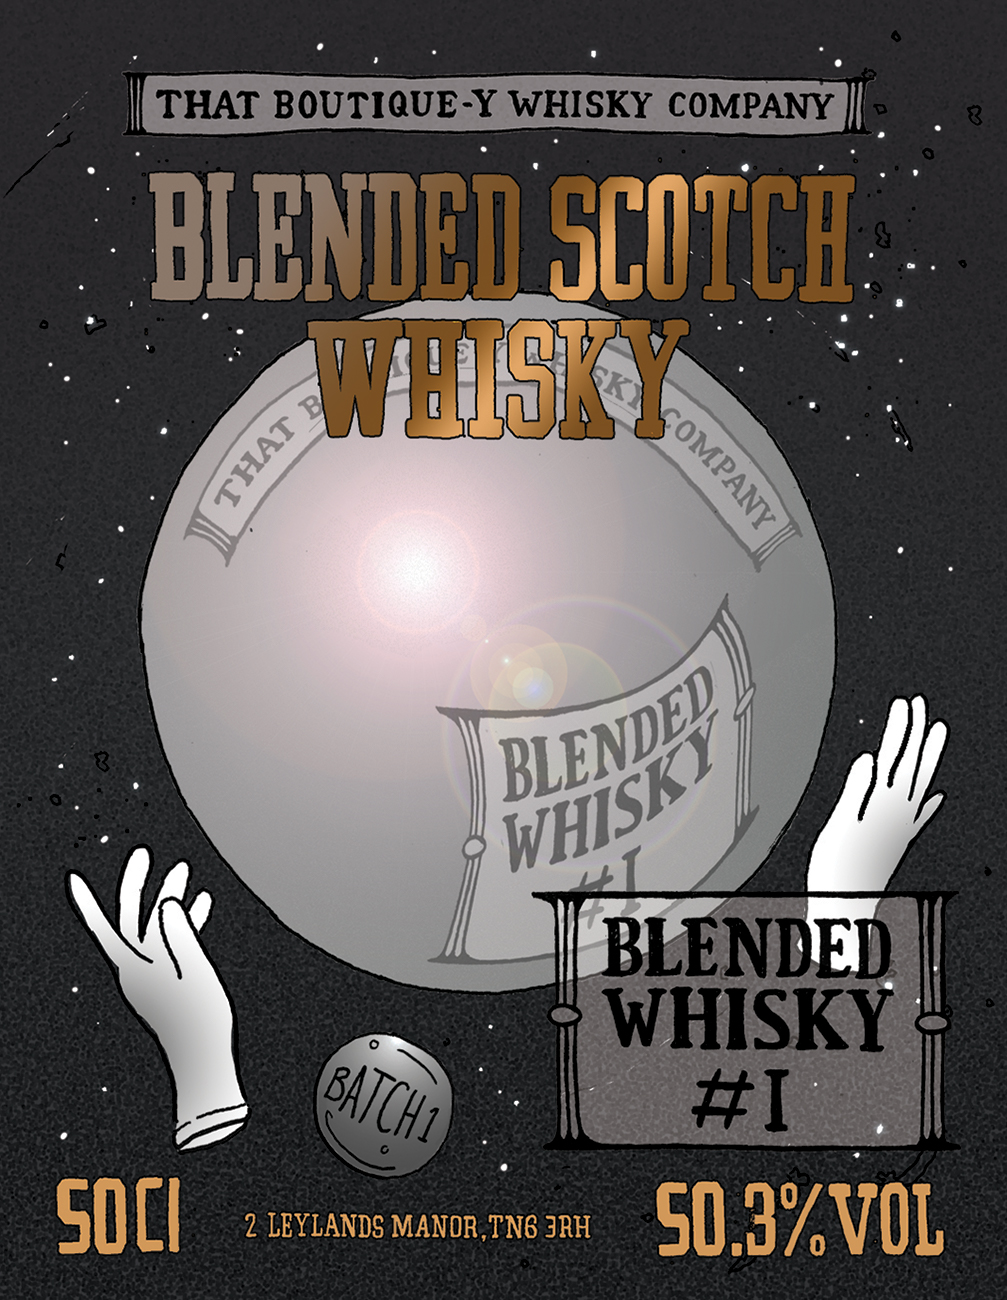 Blended Scotch Whisky 1 B1.jpg